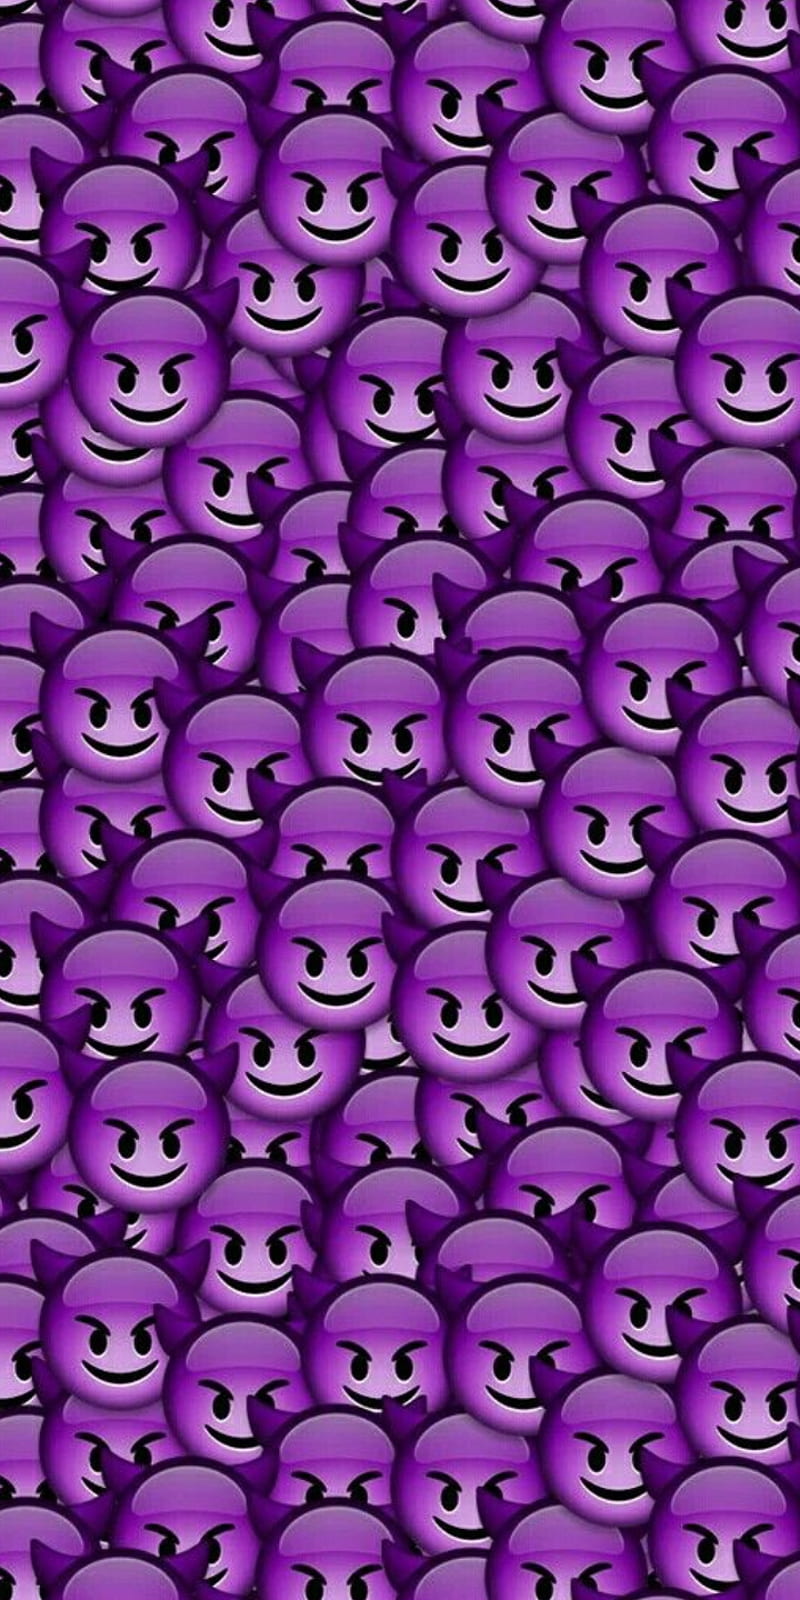 Devil Emoji wallpaper by Gemini90mex  Download on ZEDGE  9d6d